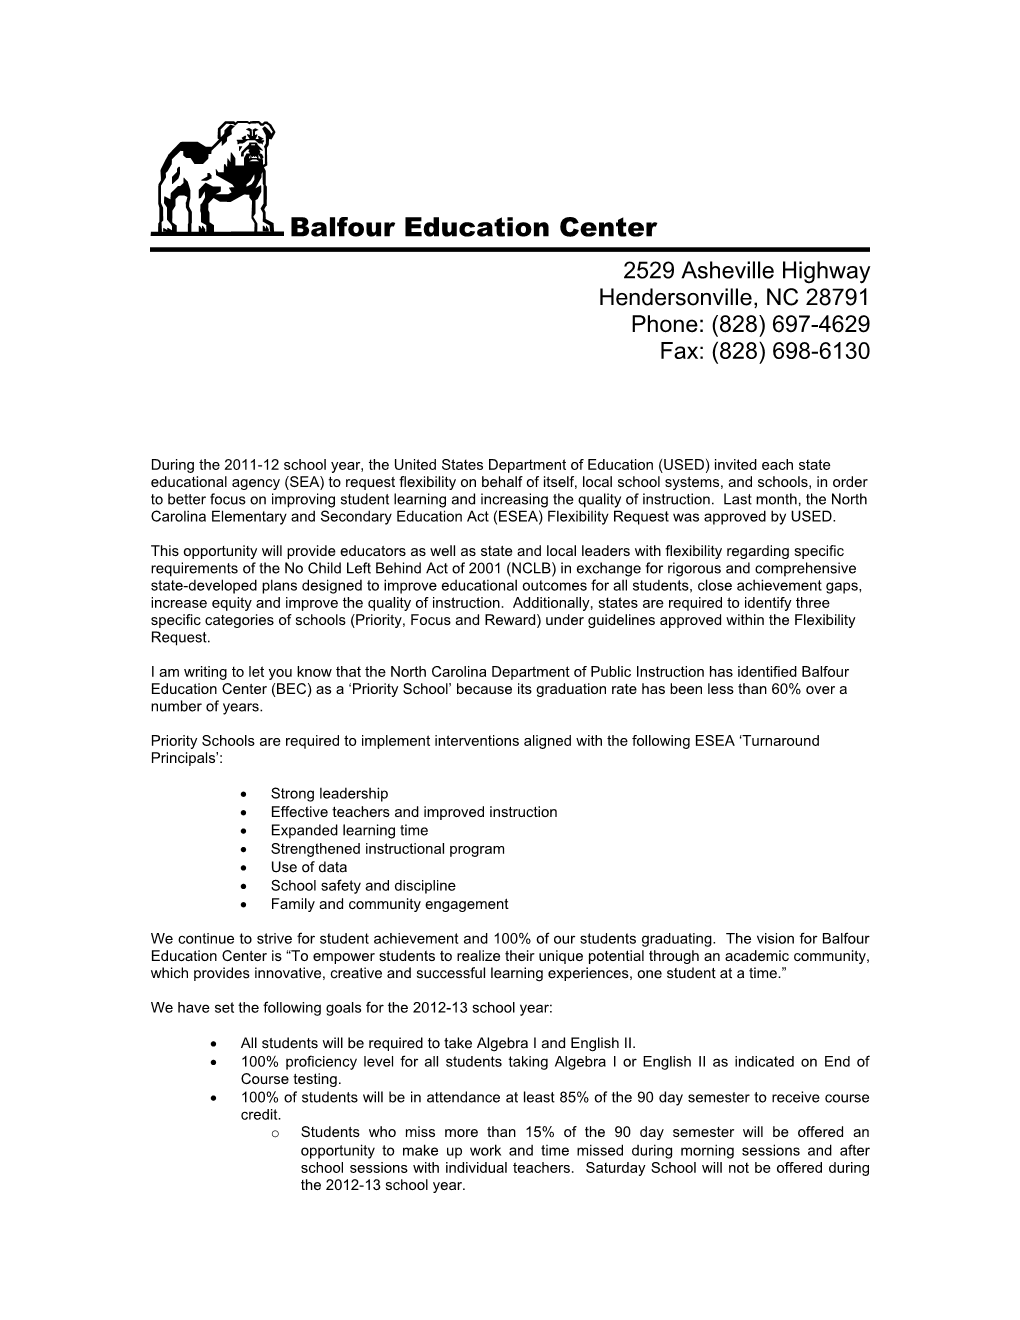 Balfour Education Center